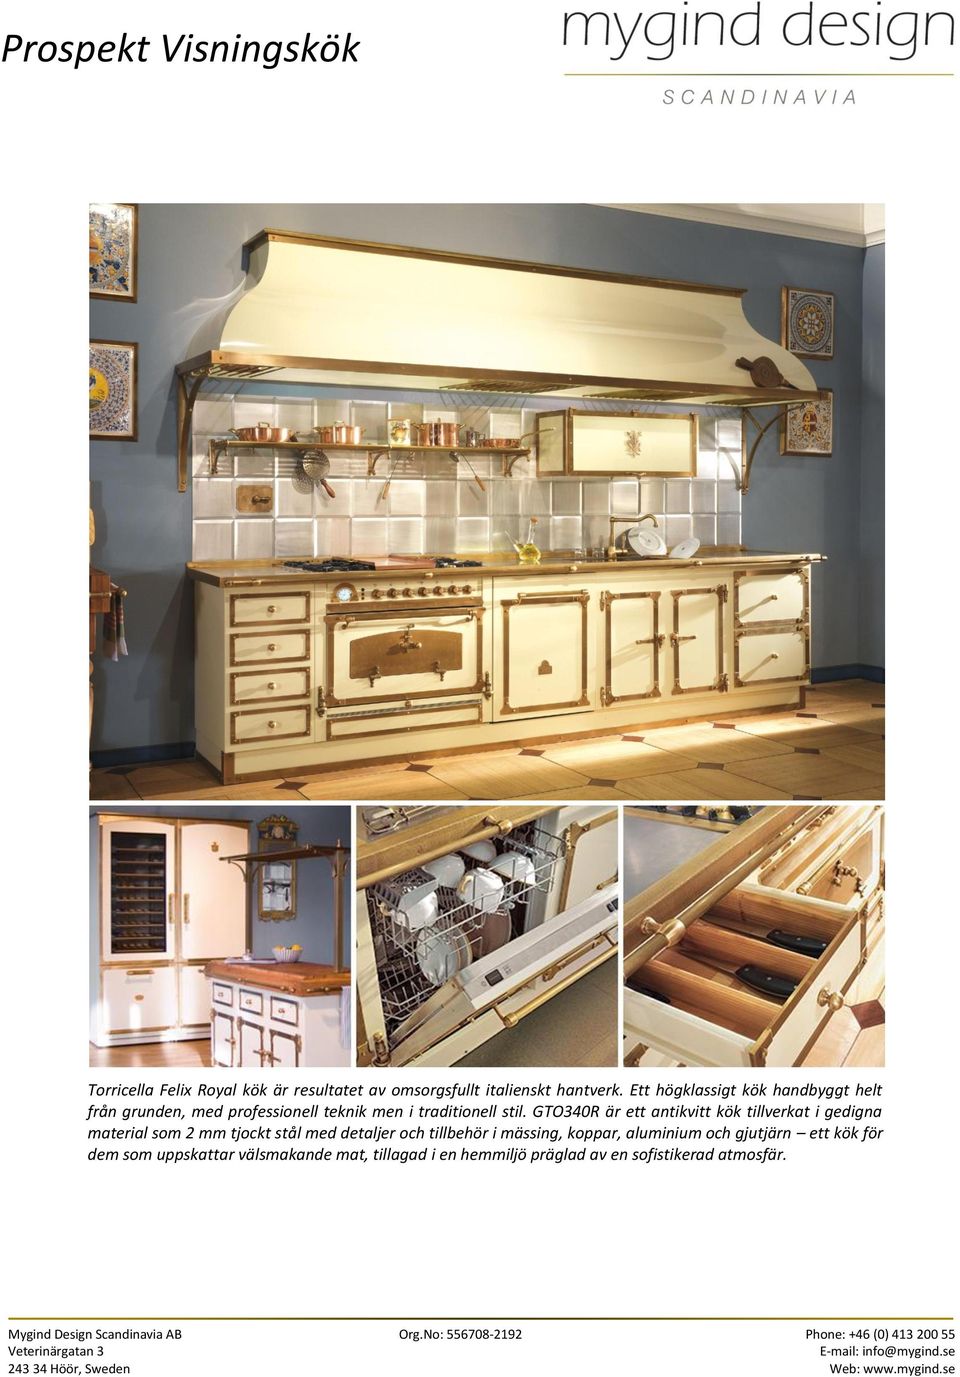 GTO340R är ett antikvitt kök tillverkat i gedigna material som 2 mm tjockt stål med detaljer och tillbehör i